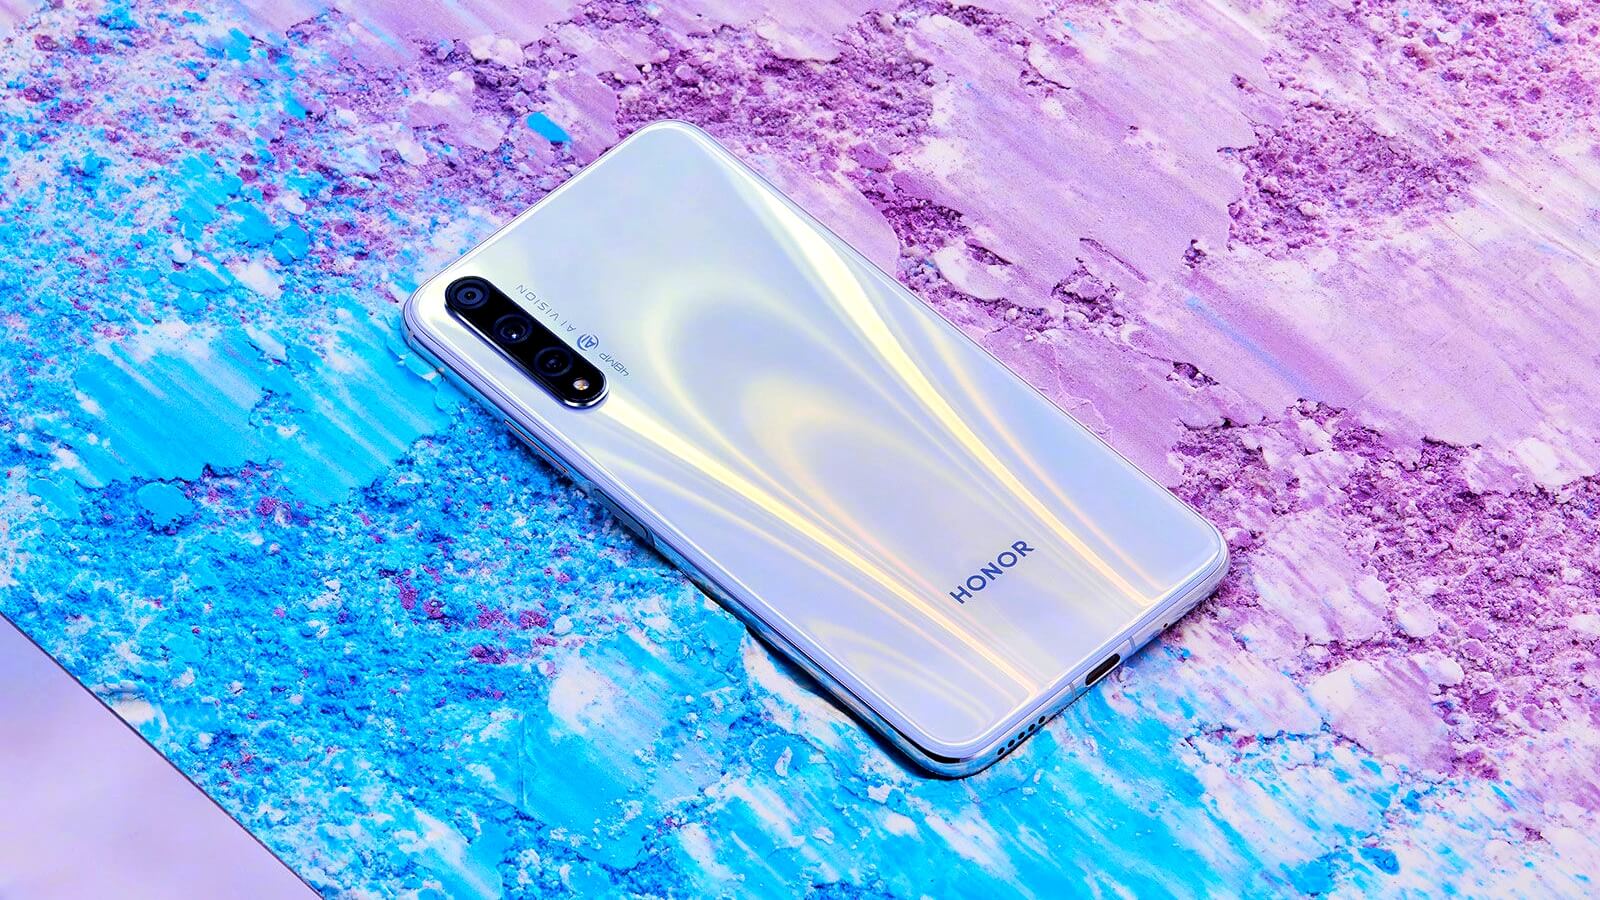 Huawei Honor 20s